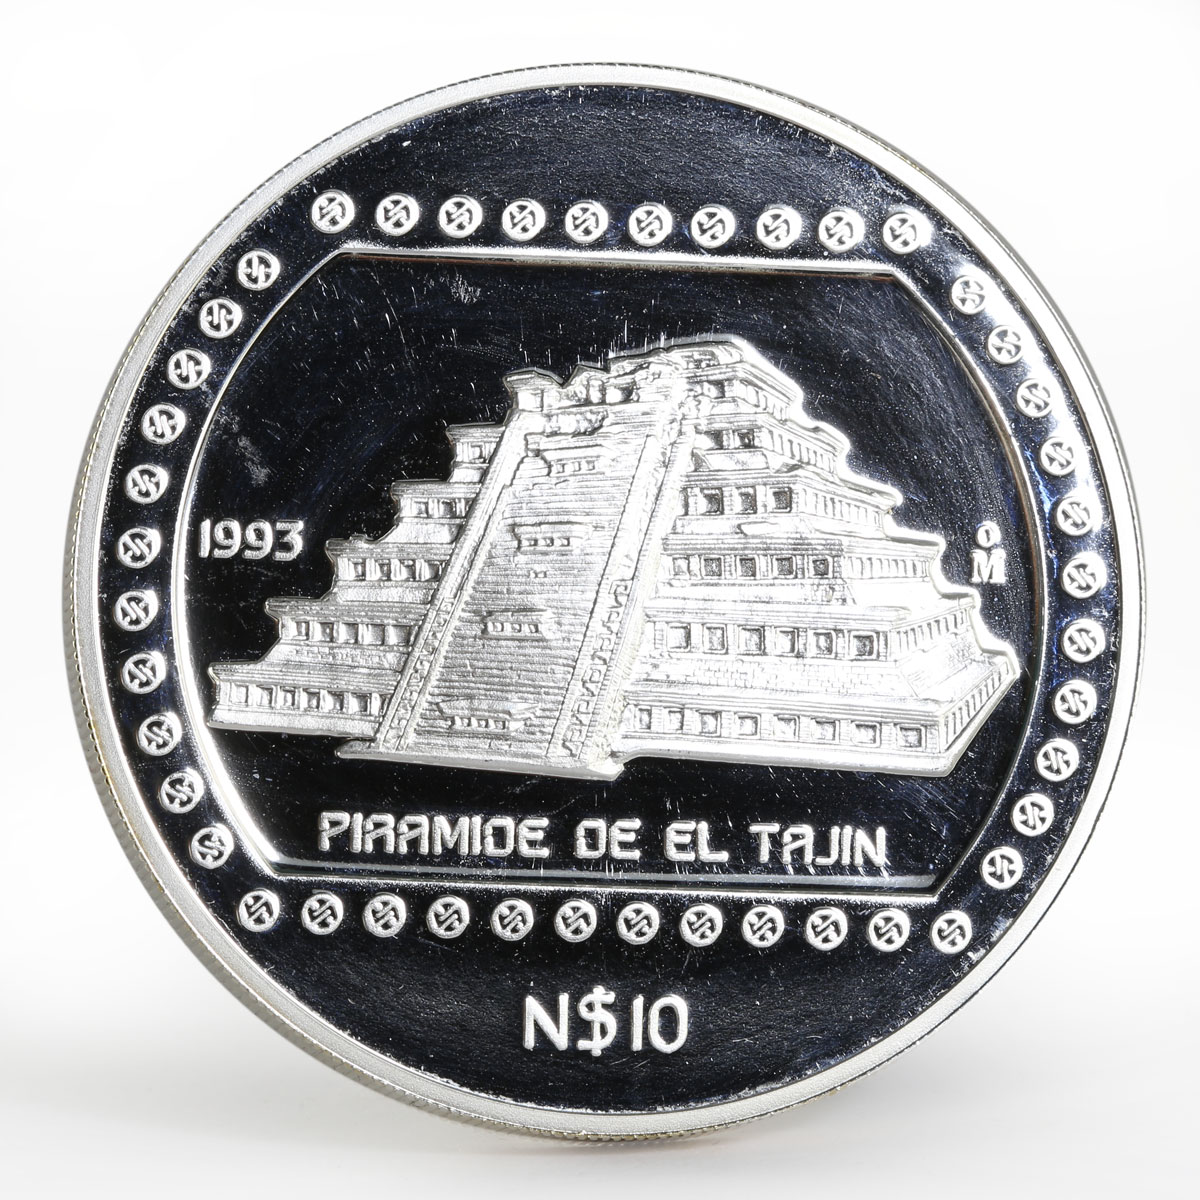 Mexico 10 pesos Piramide de el Tajin proof silver coin 1993